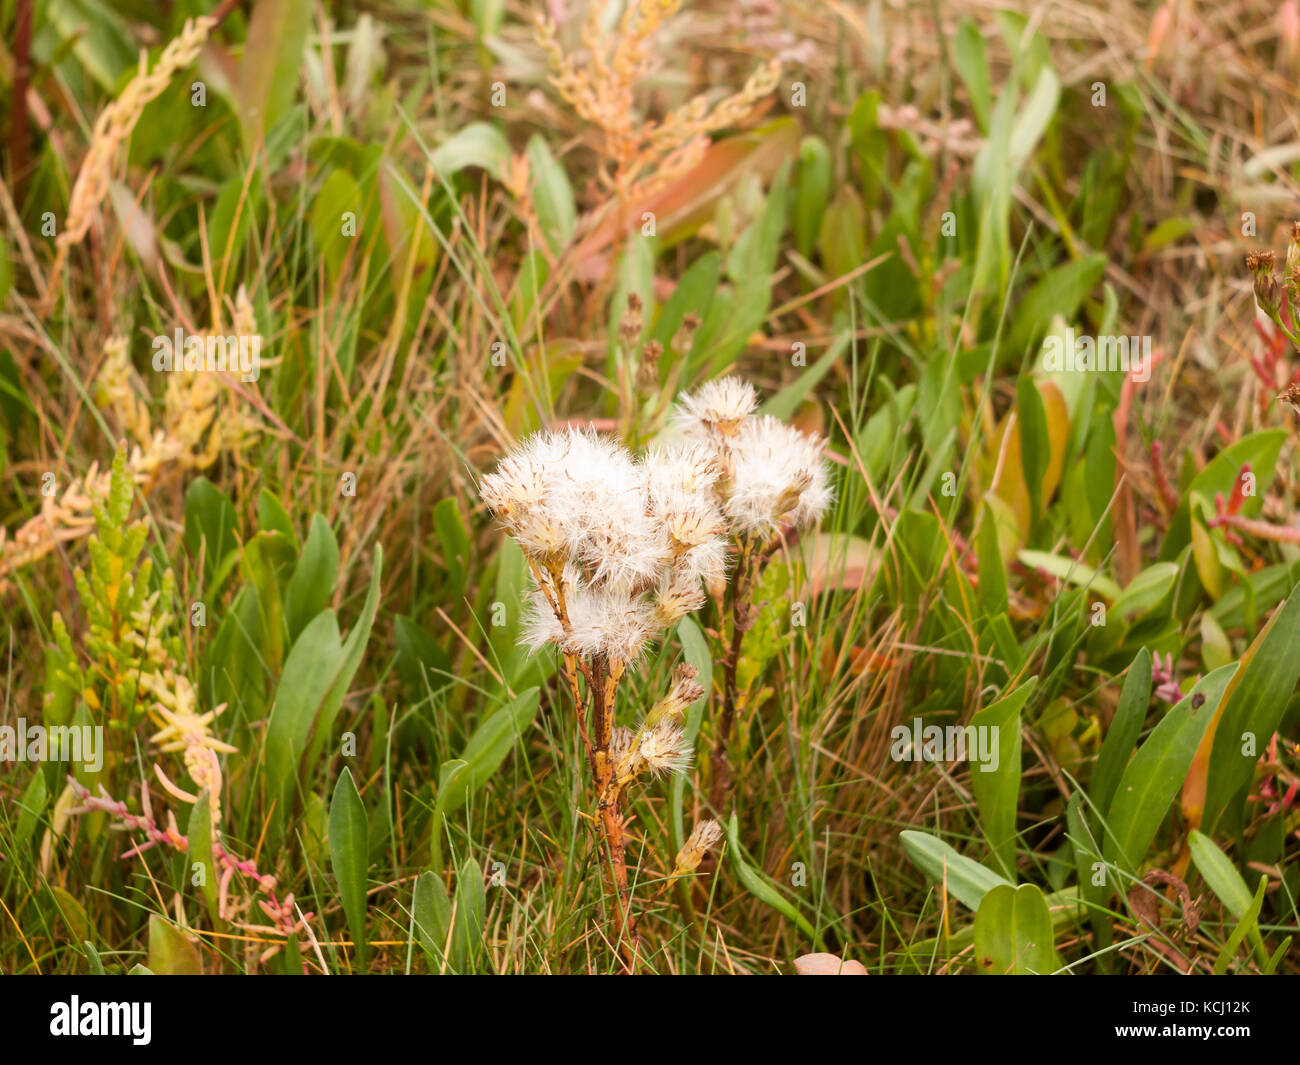 Vielen flauschigen weissen Blüten auf Anlage in das Gras Hintergrund Herbst, Essex, England, Großbritannien Stockfoto